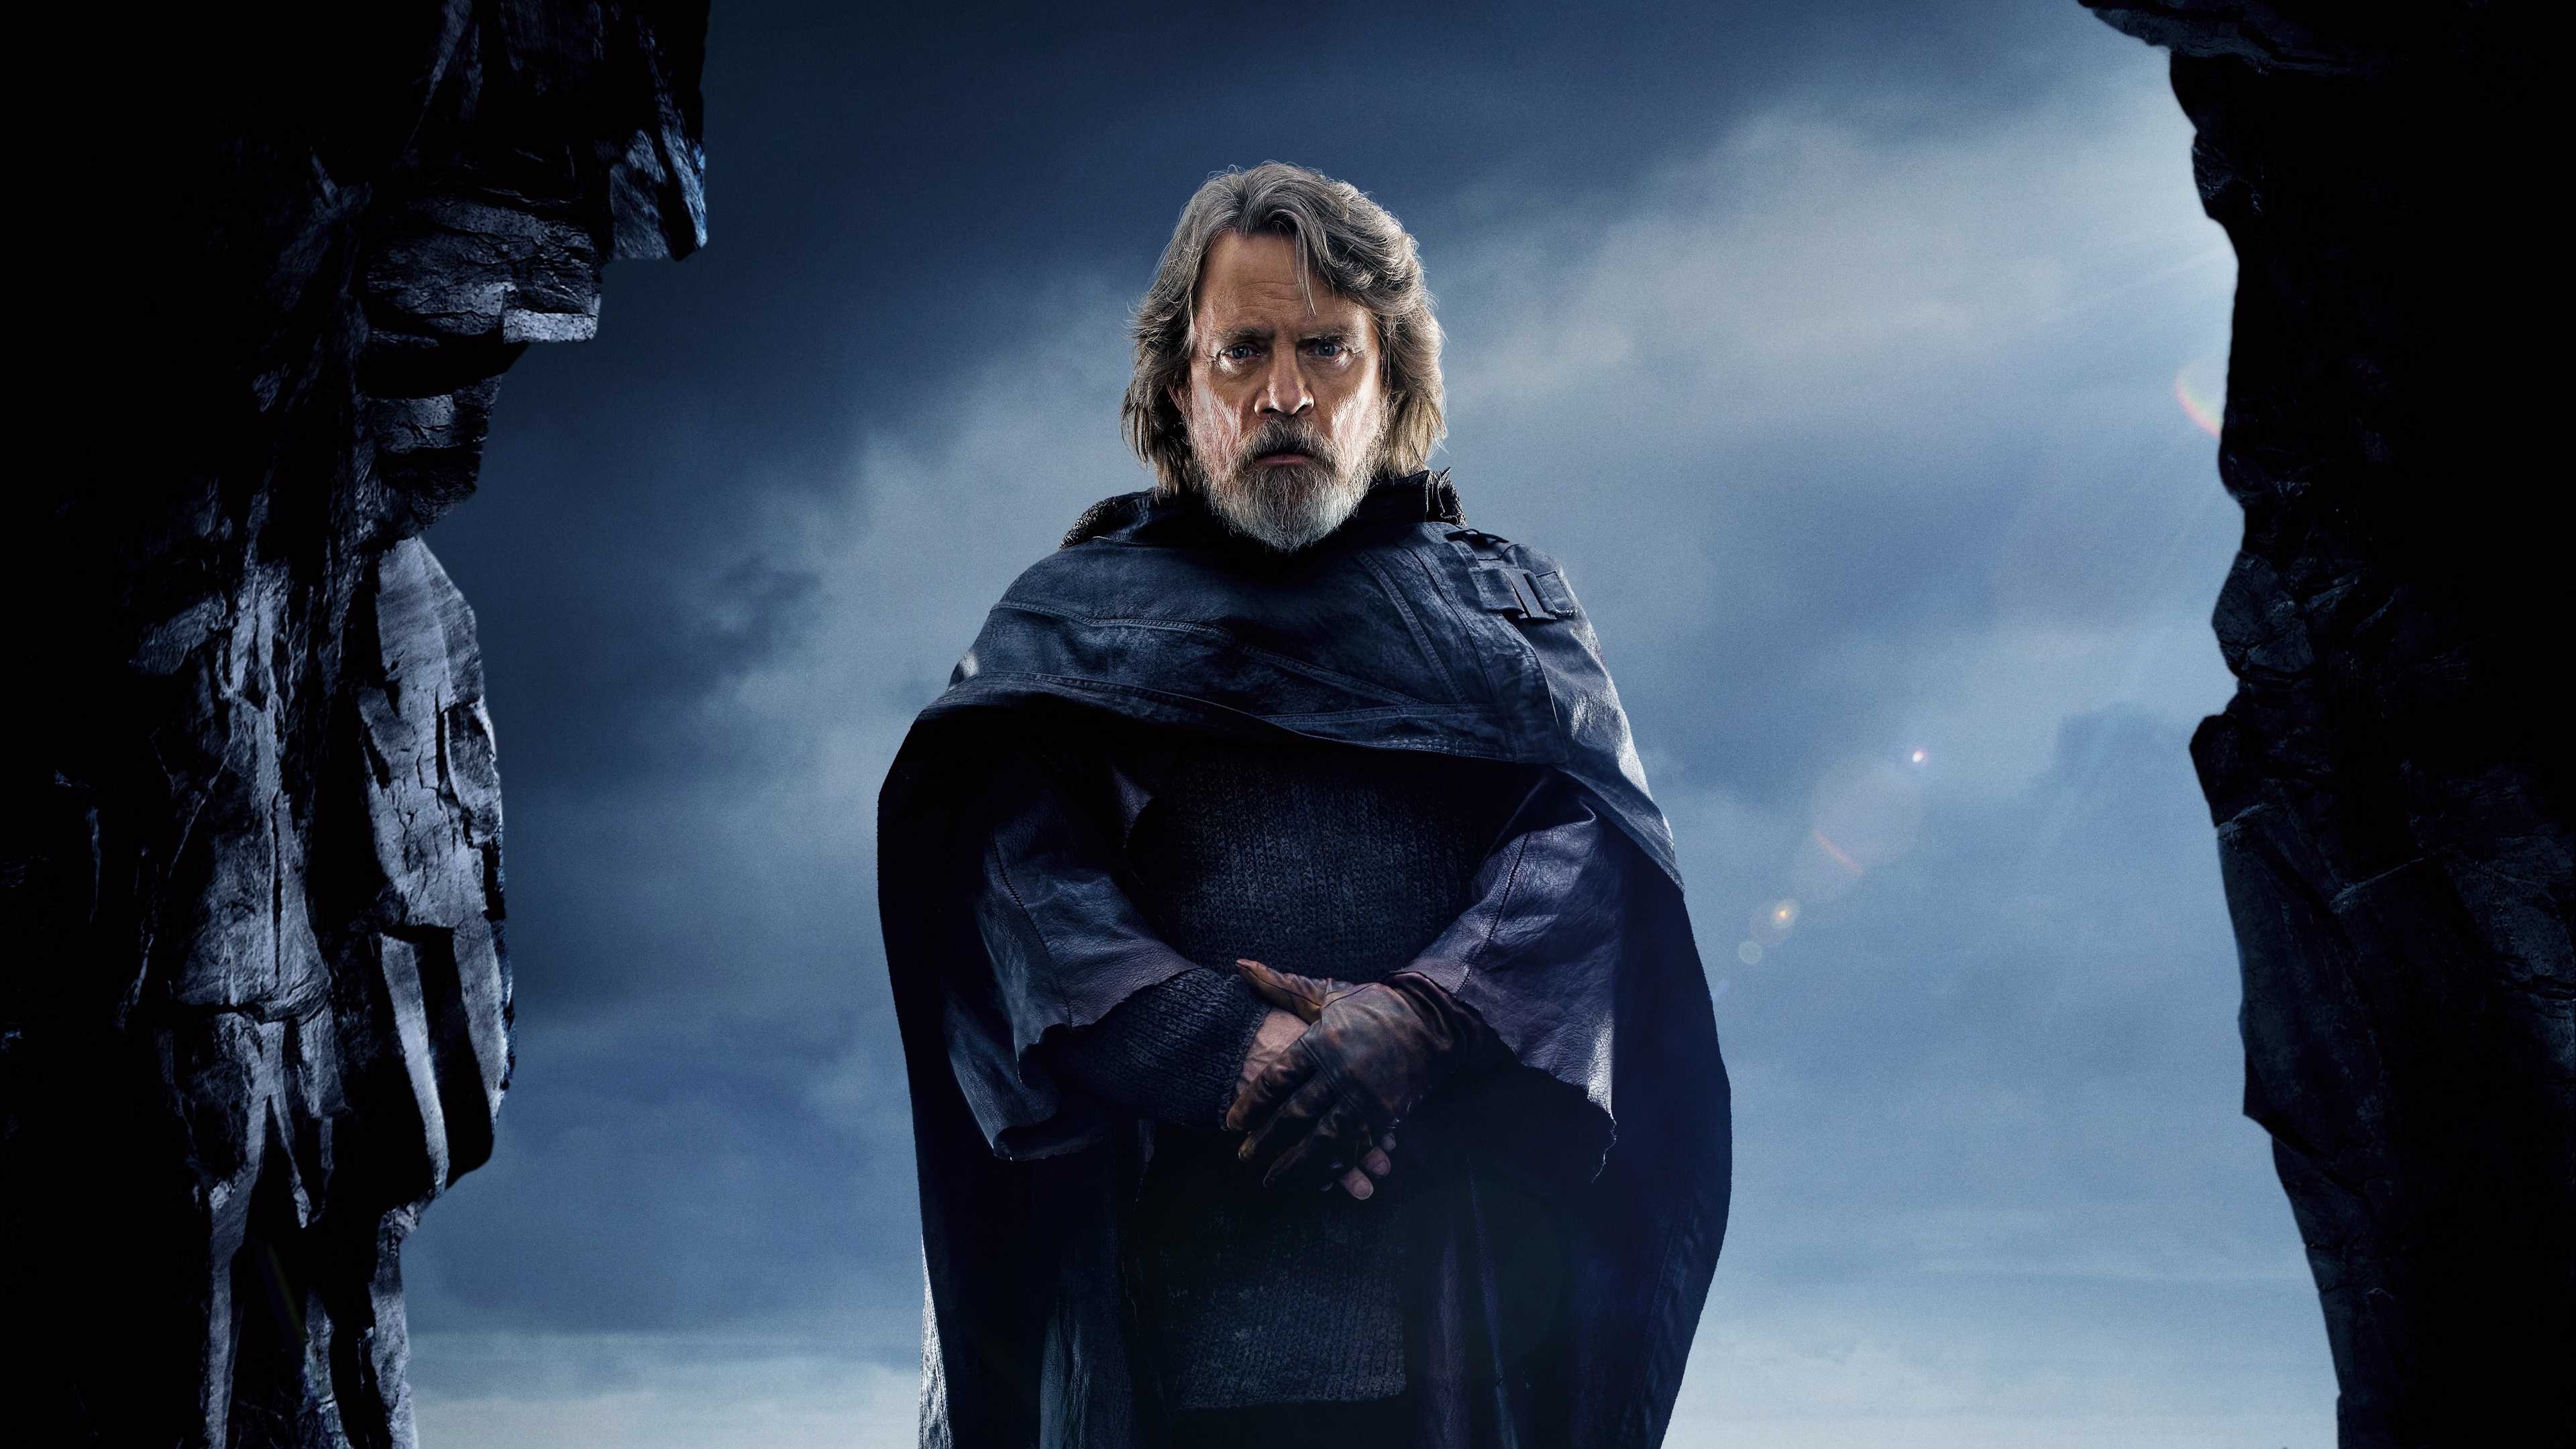 Luke Skywalker (Star Wars), Last Jedi, Luke Skywalker, UHD 4K wallpaper, 3840x2160 4K Desktop